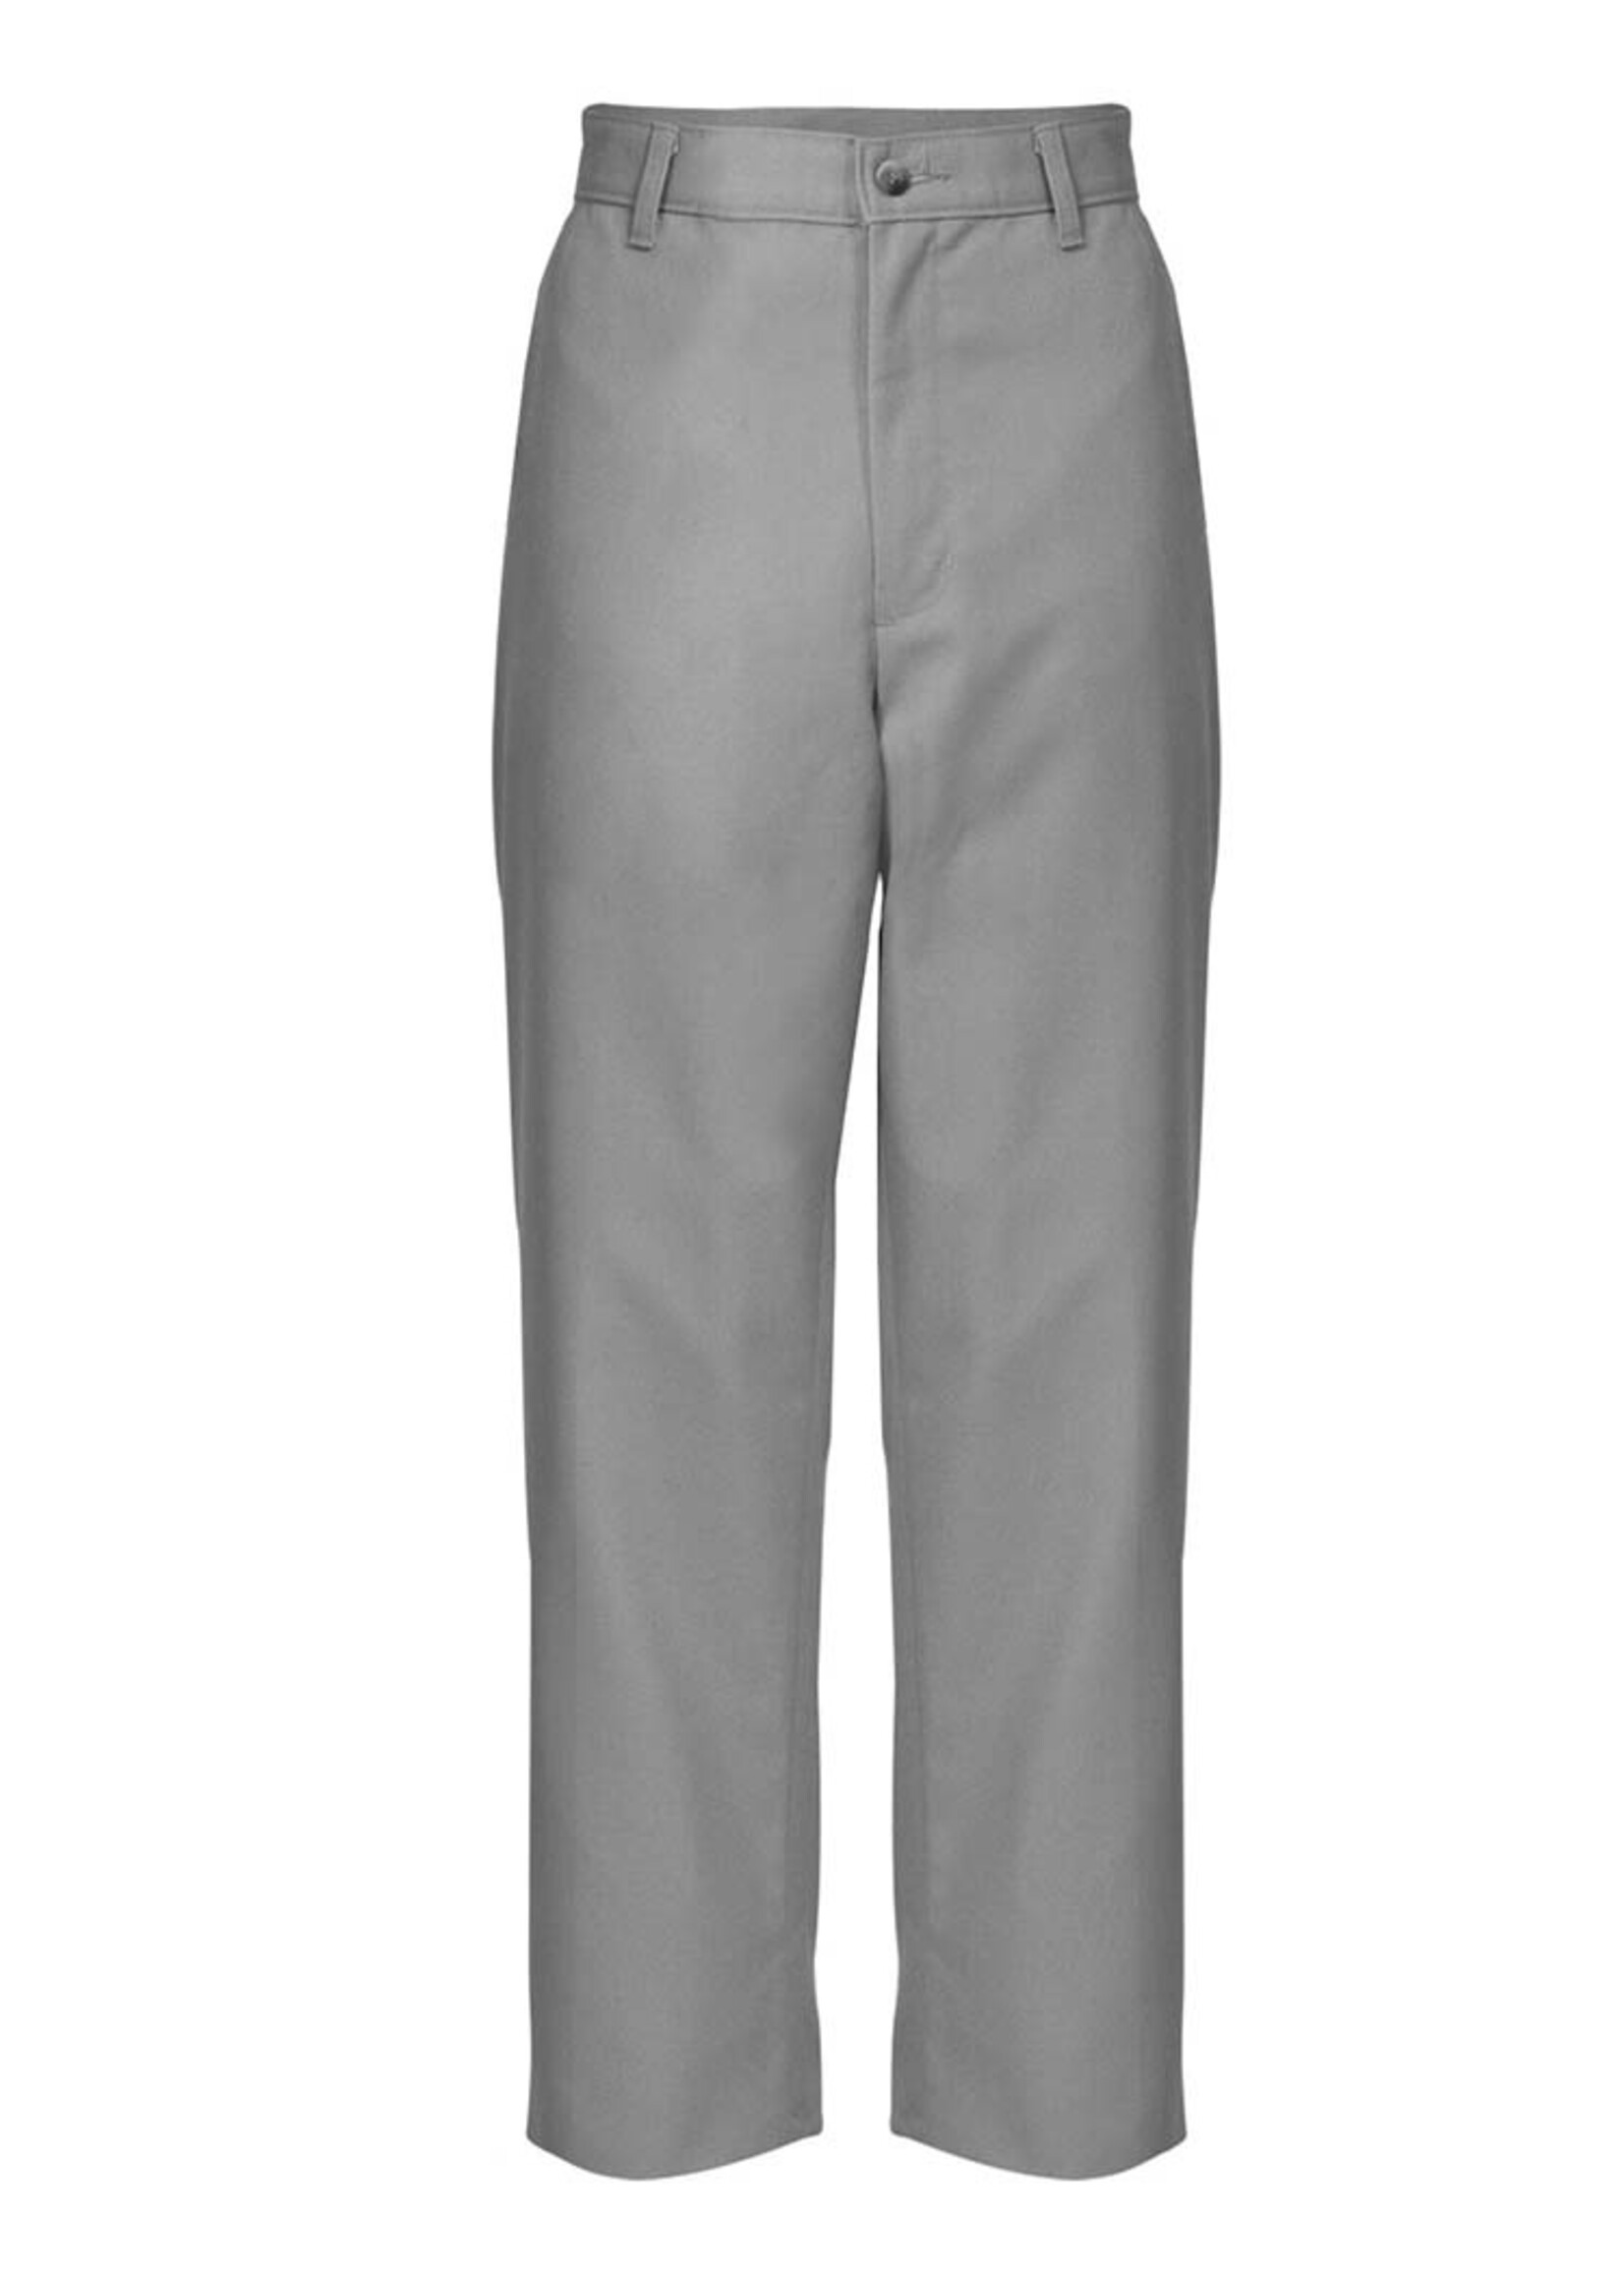 A+ Mens Grey Flat Front Pants